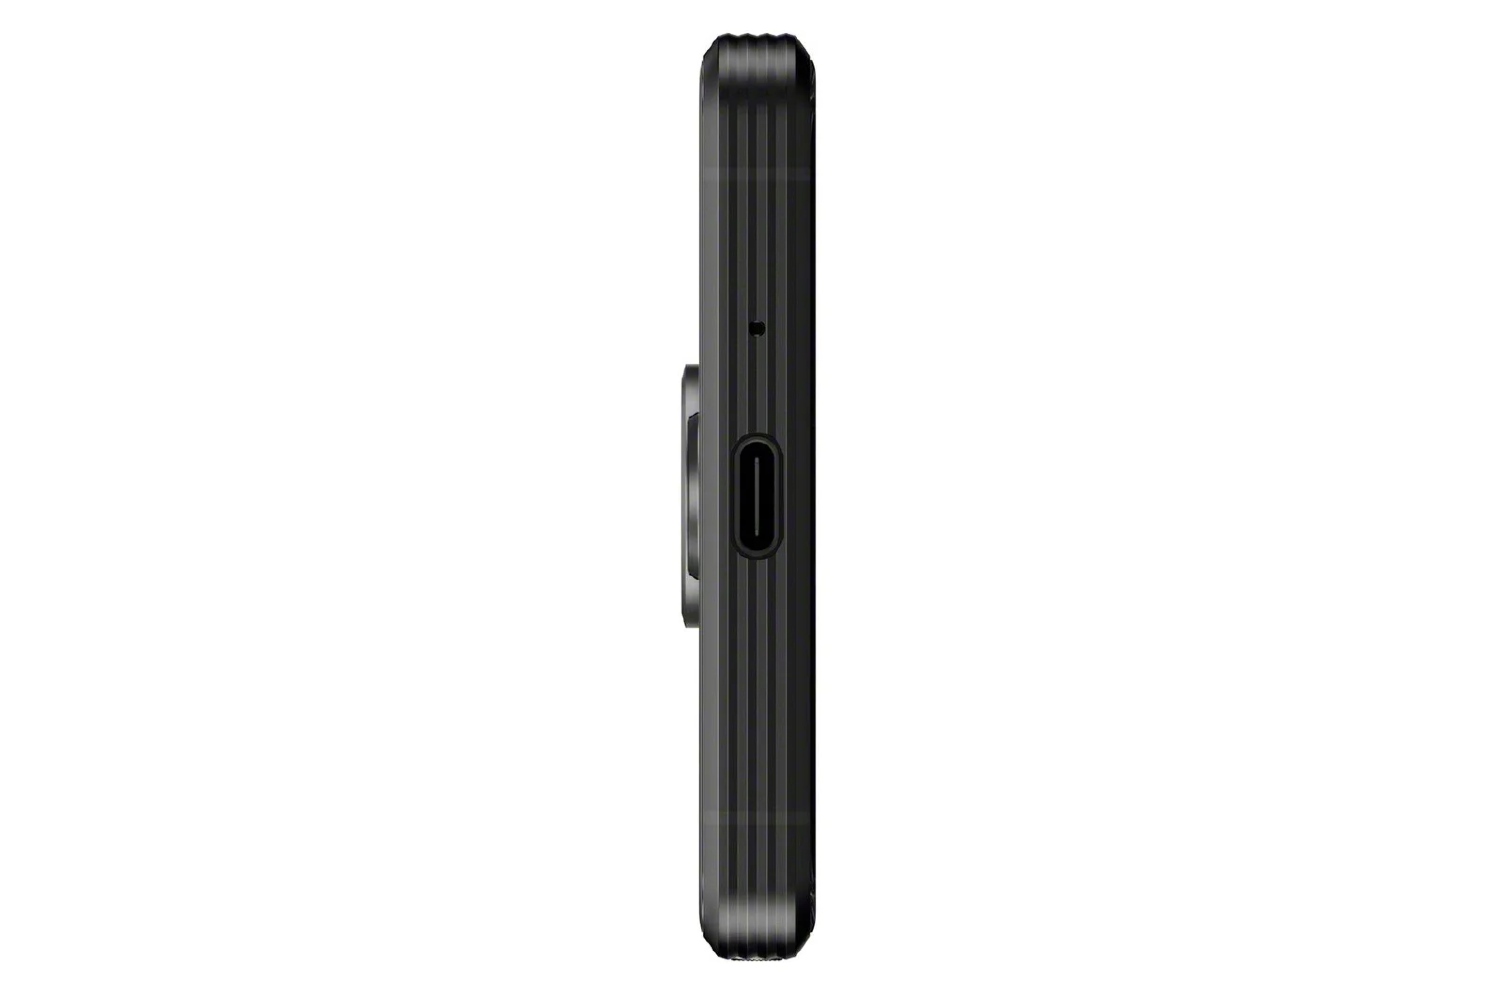 درگاه شارژ گوشی موبایل اکسپریا پرو آی سونی / Sony Xperia Pro-I